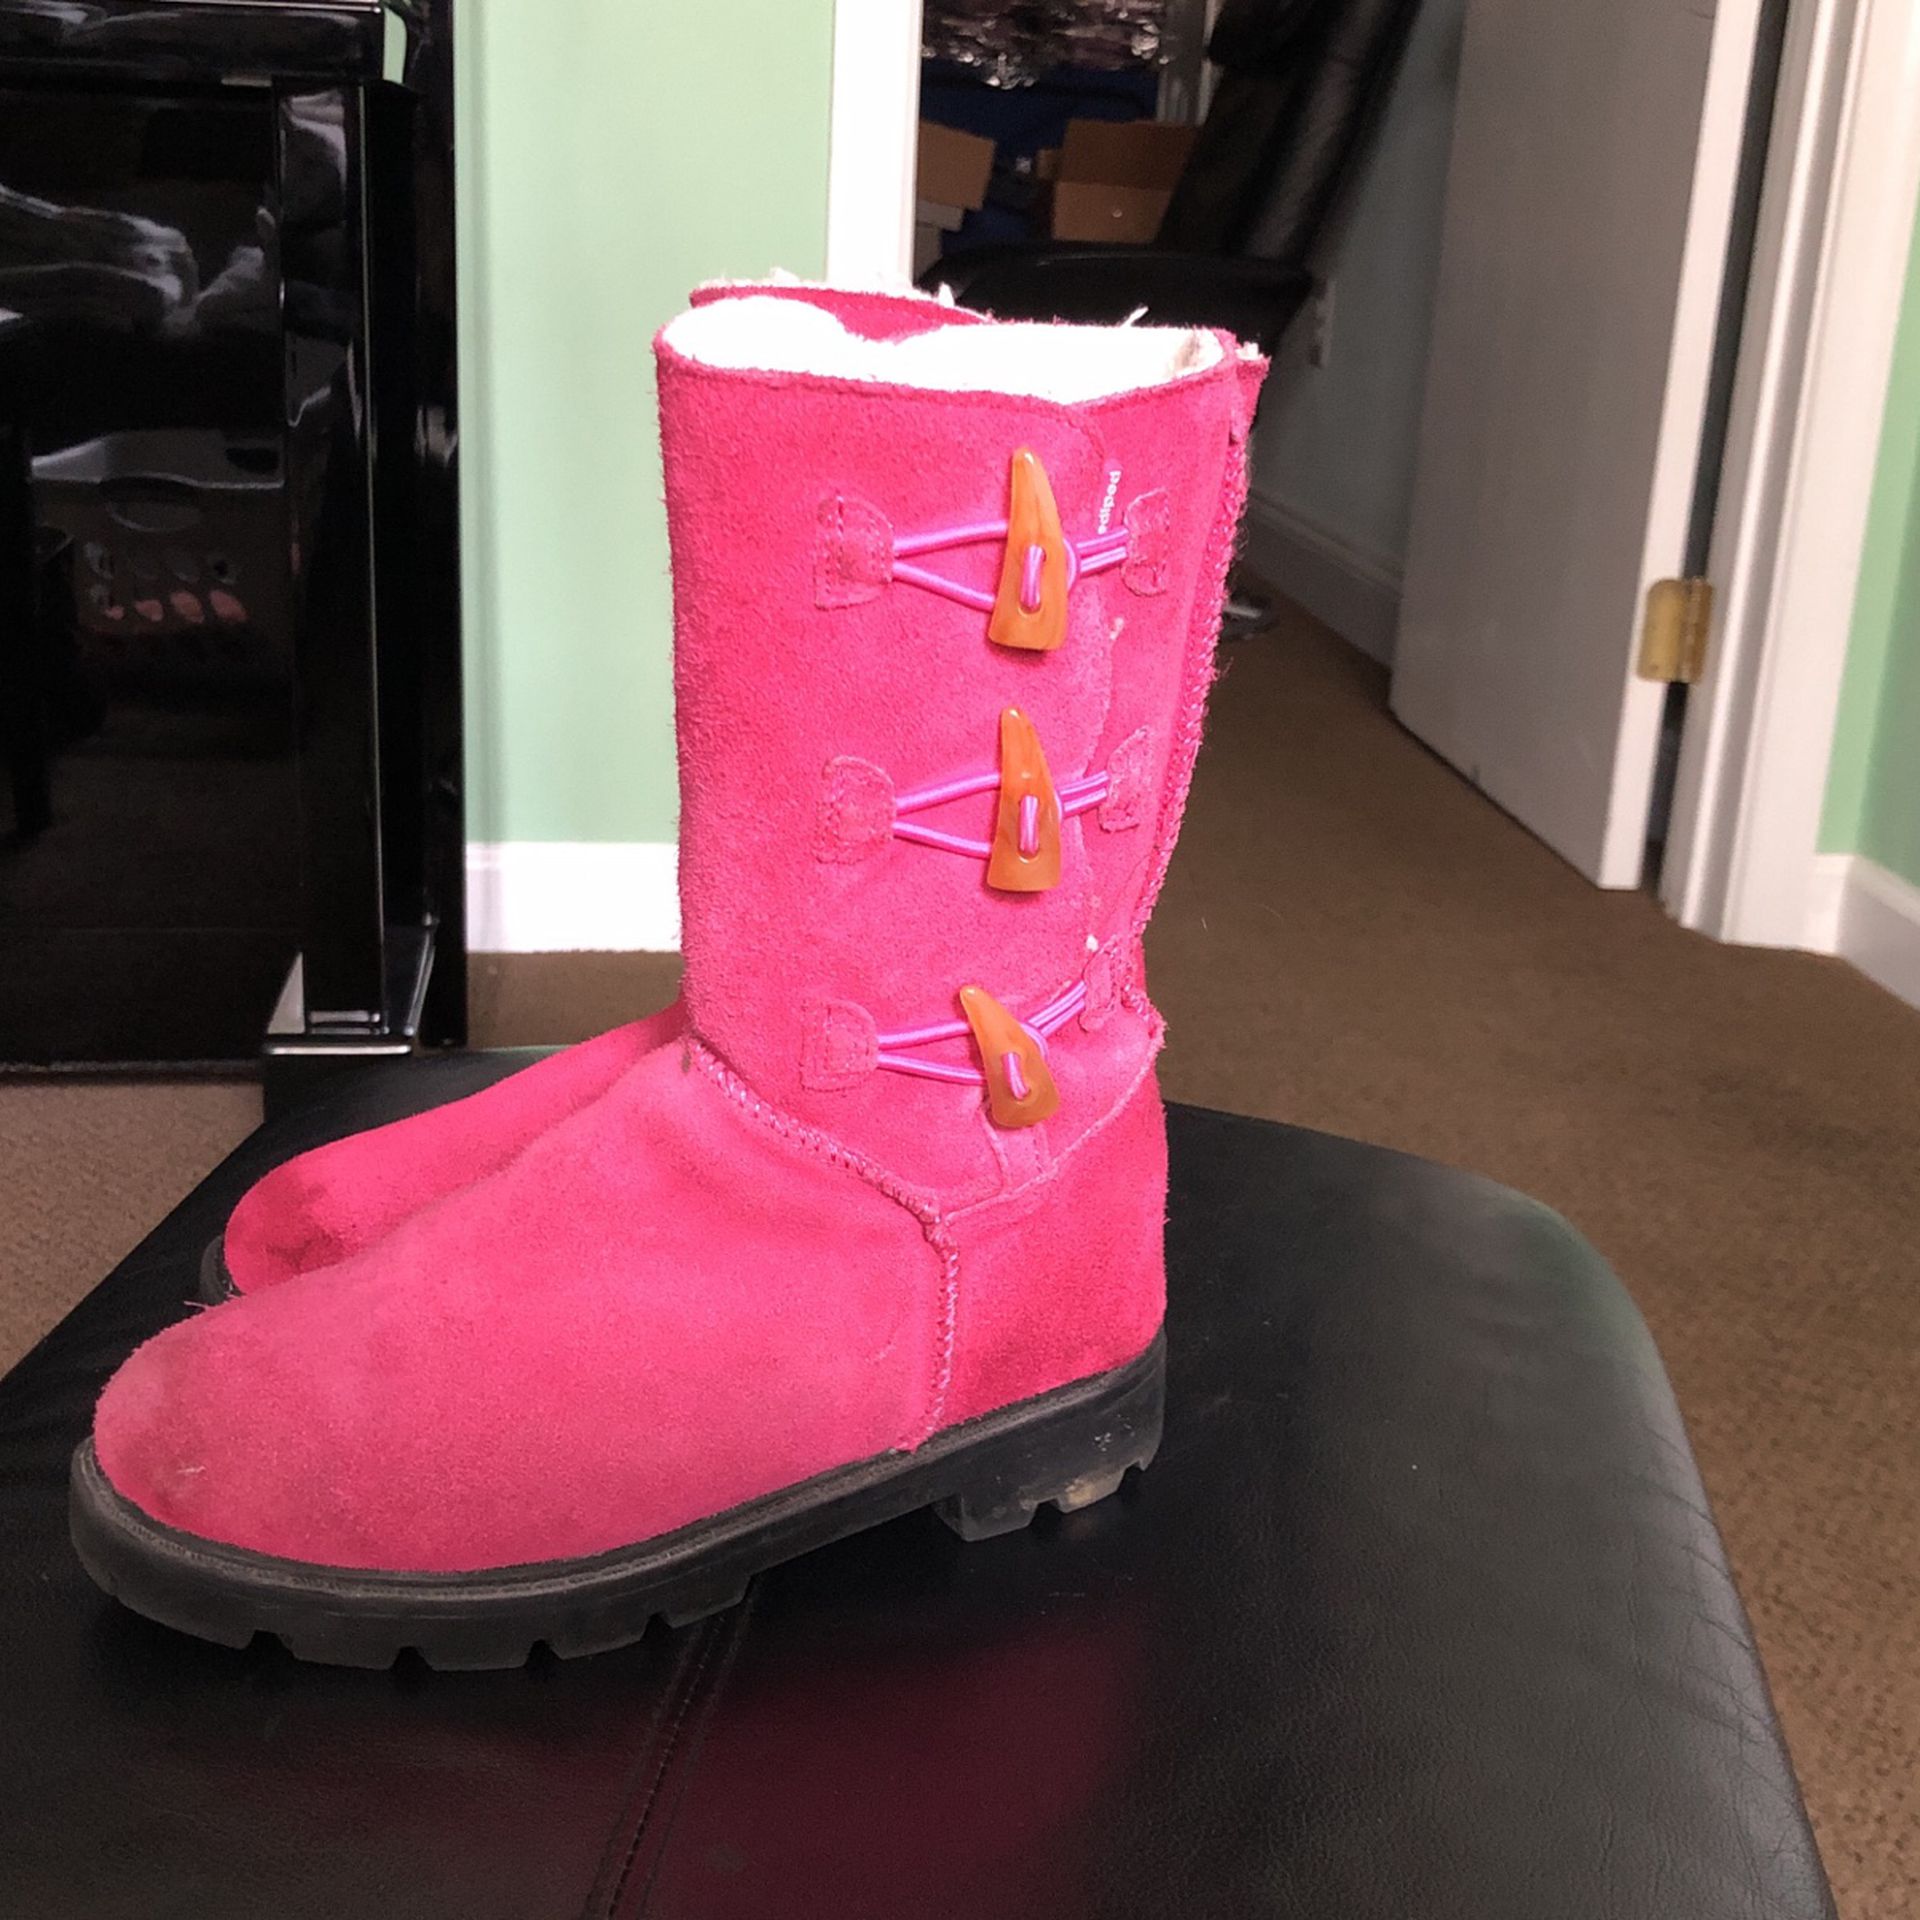 Kids Warm Boots Size 13 Pediped Flex